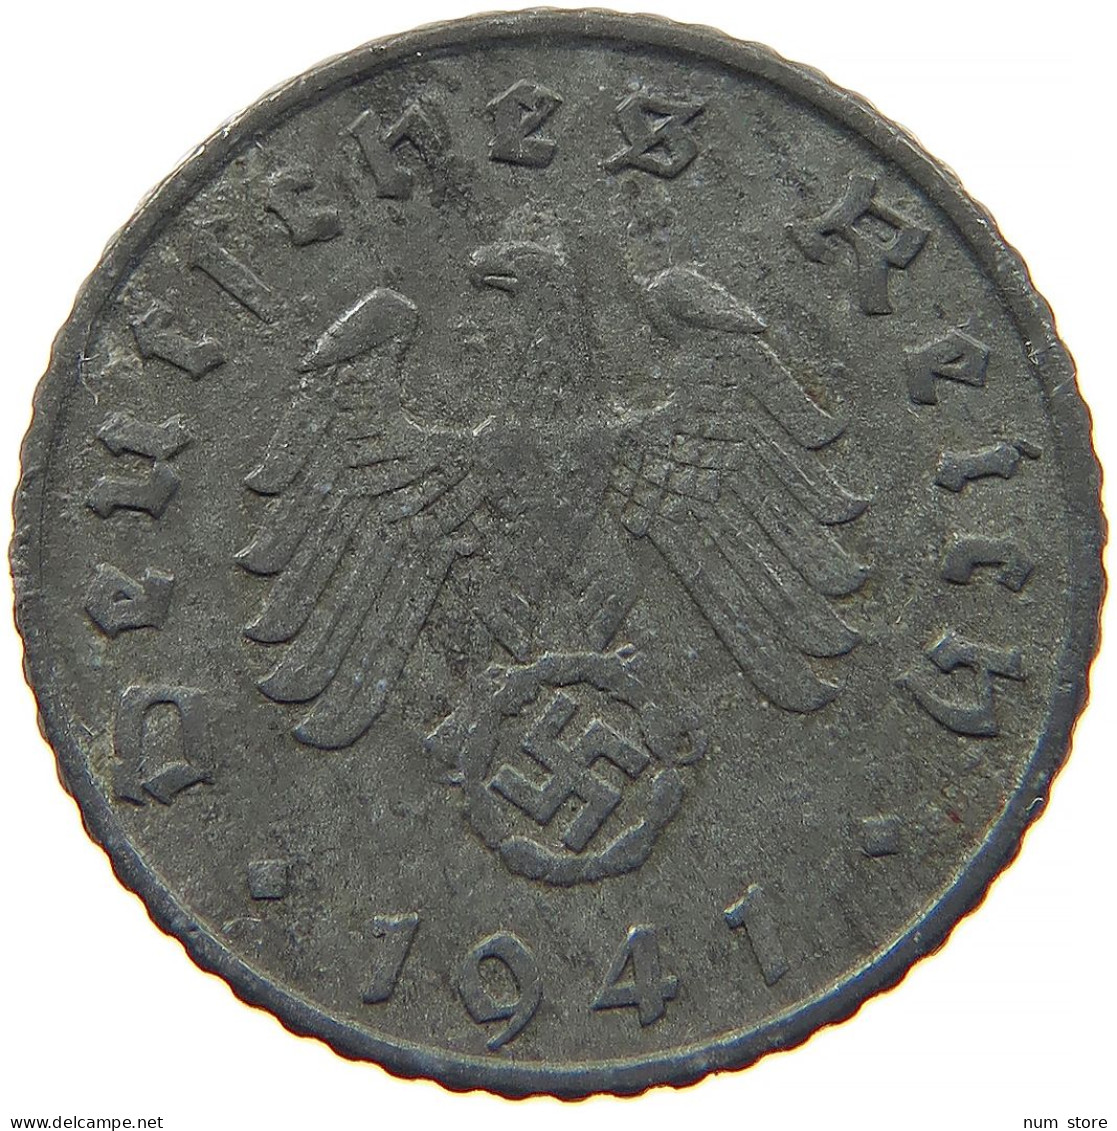 GERMANY 5 REICHSPFENNIG 1941 A #s091 0865 - 5 Reichspfennig